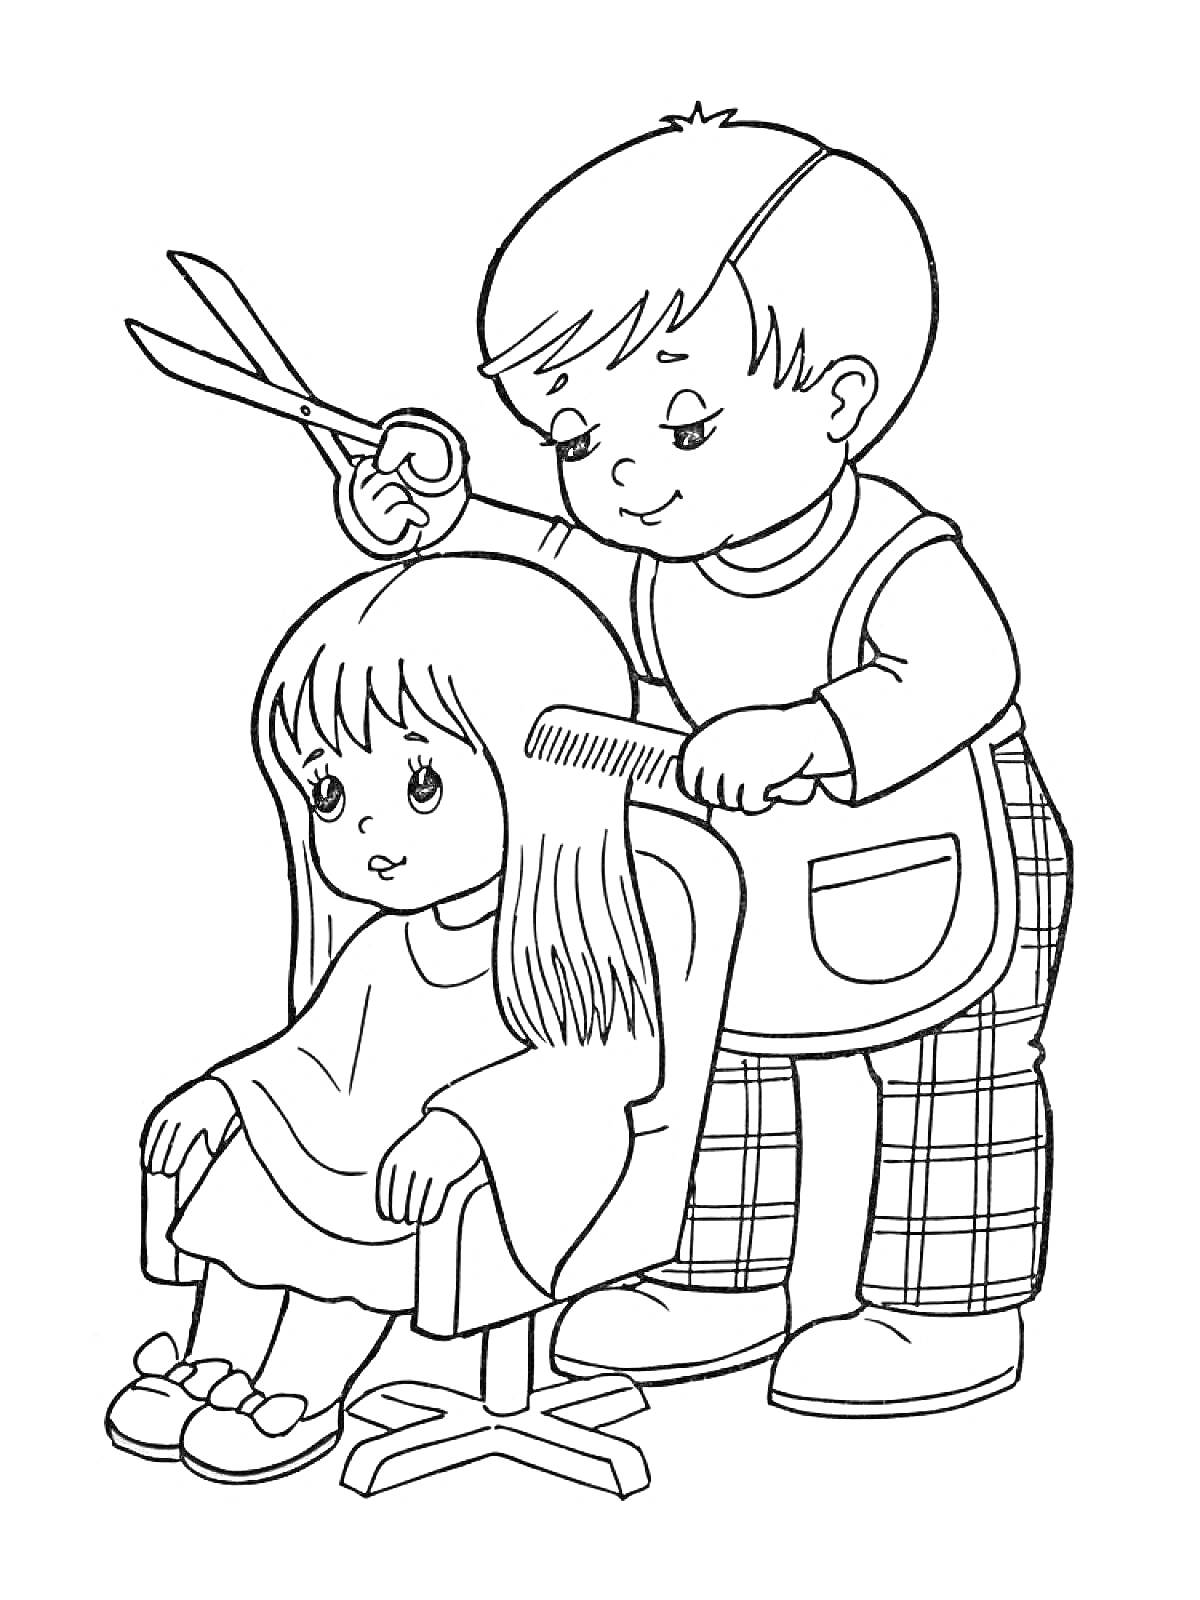 Мальчик стрижёт девочку, держа ножницы и расчёску в парикмахерской